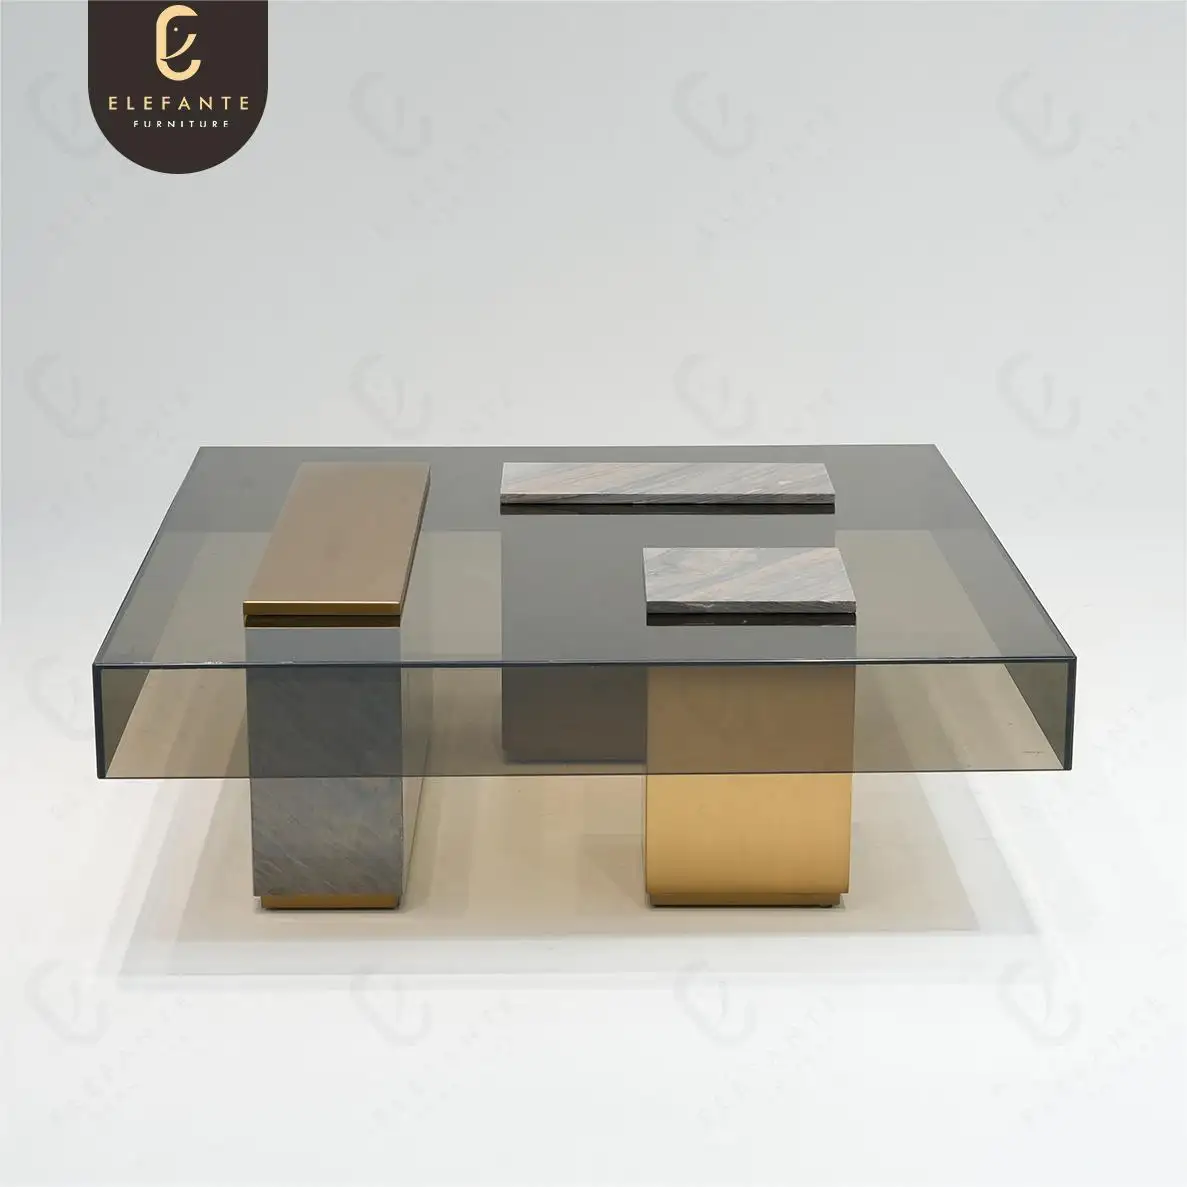 럭셔리 현대 이탈리아 패션 거실 사이드 센터 테이블 바닥 유리 라운지 테이블에 앉아 낮은 테이블